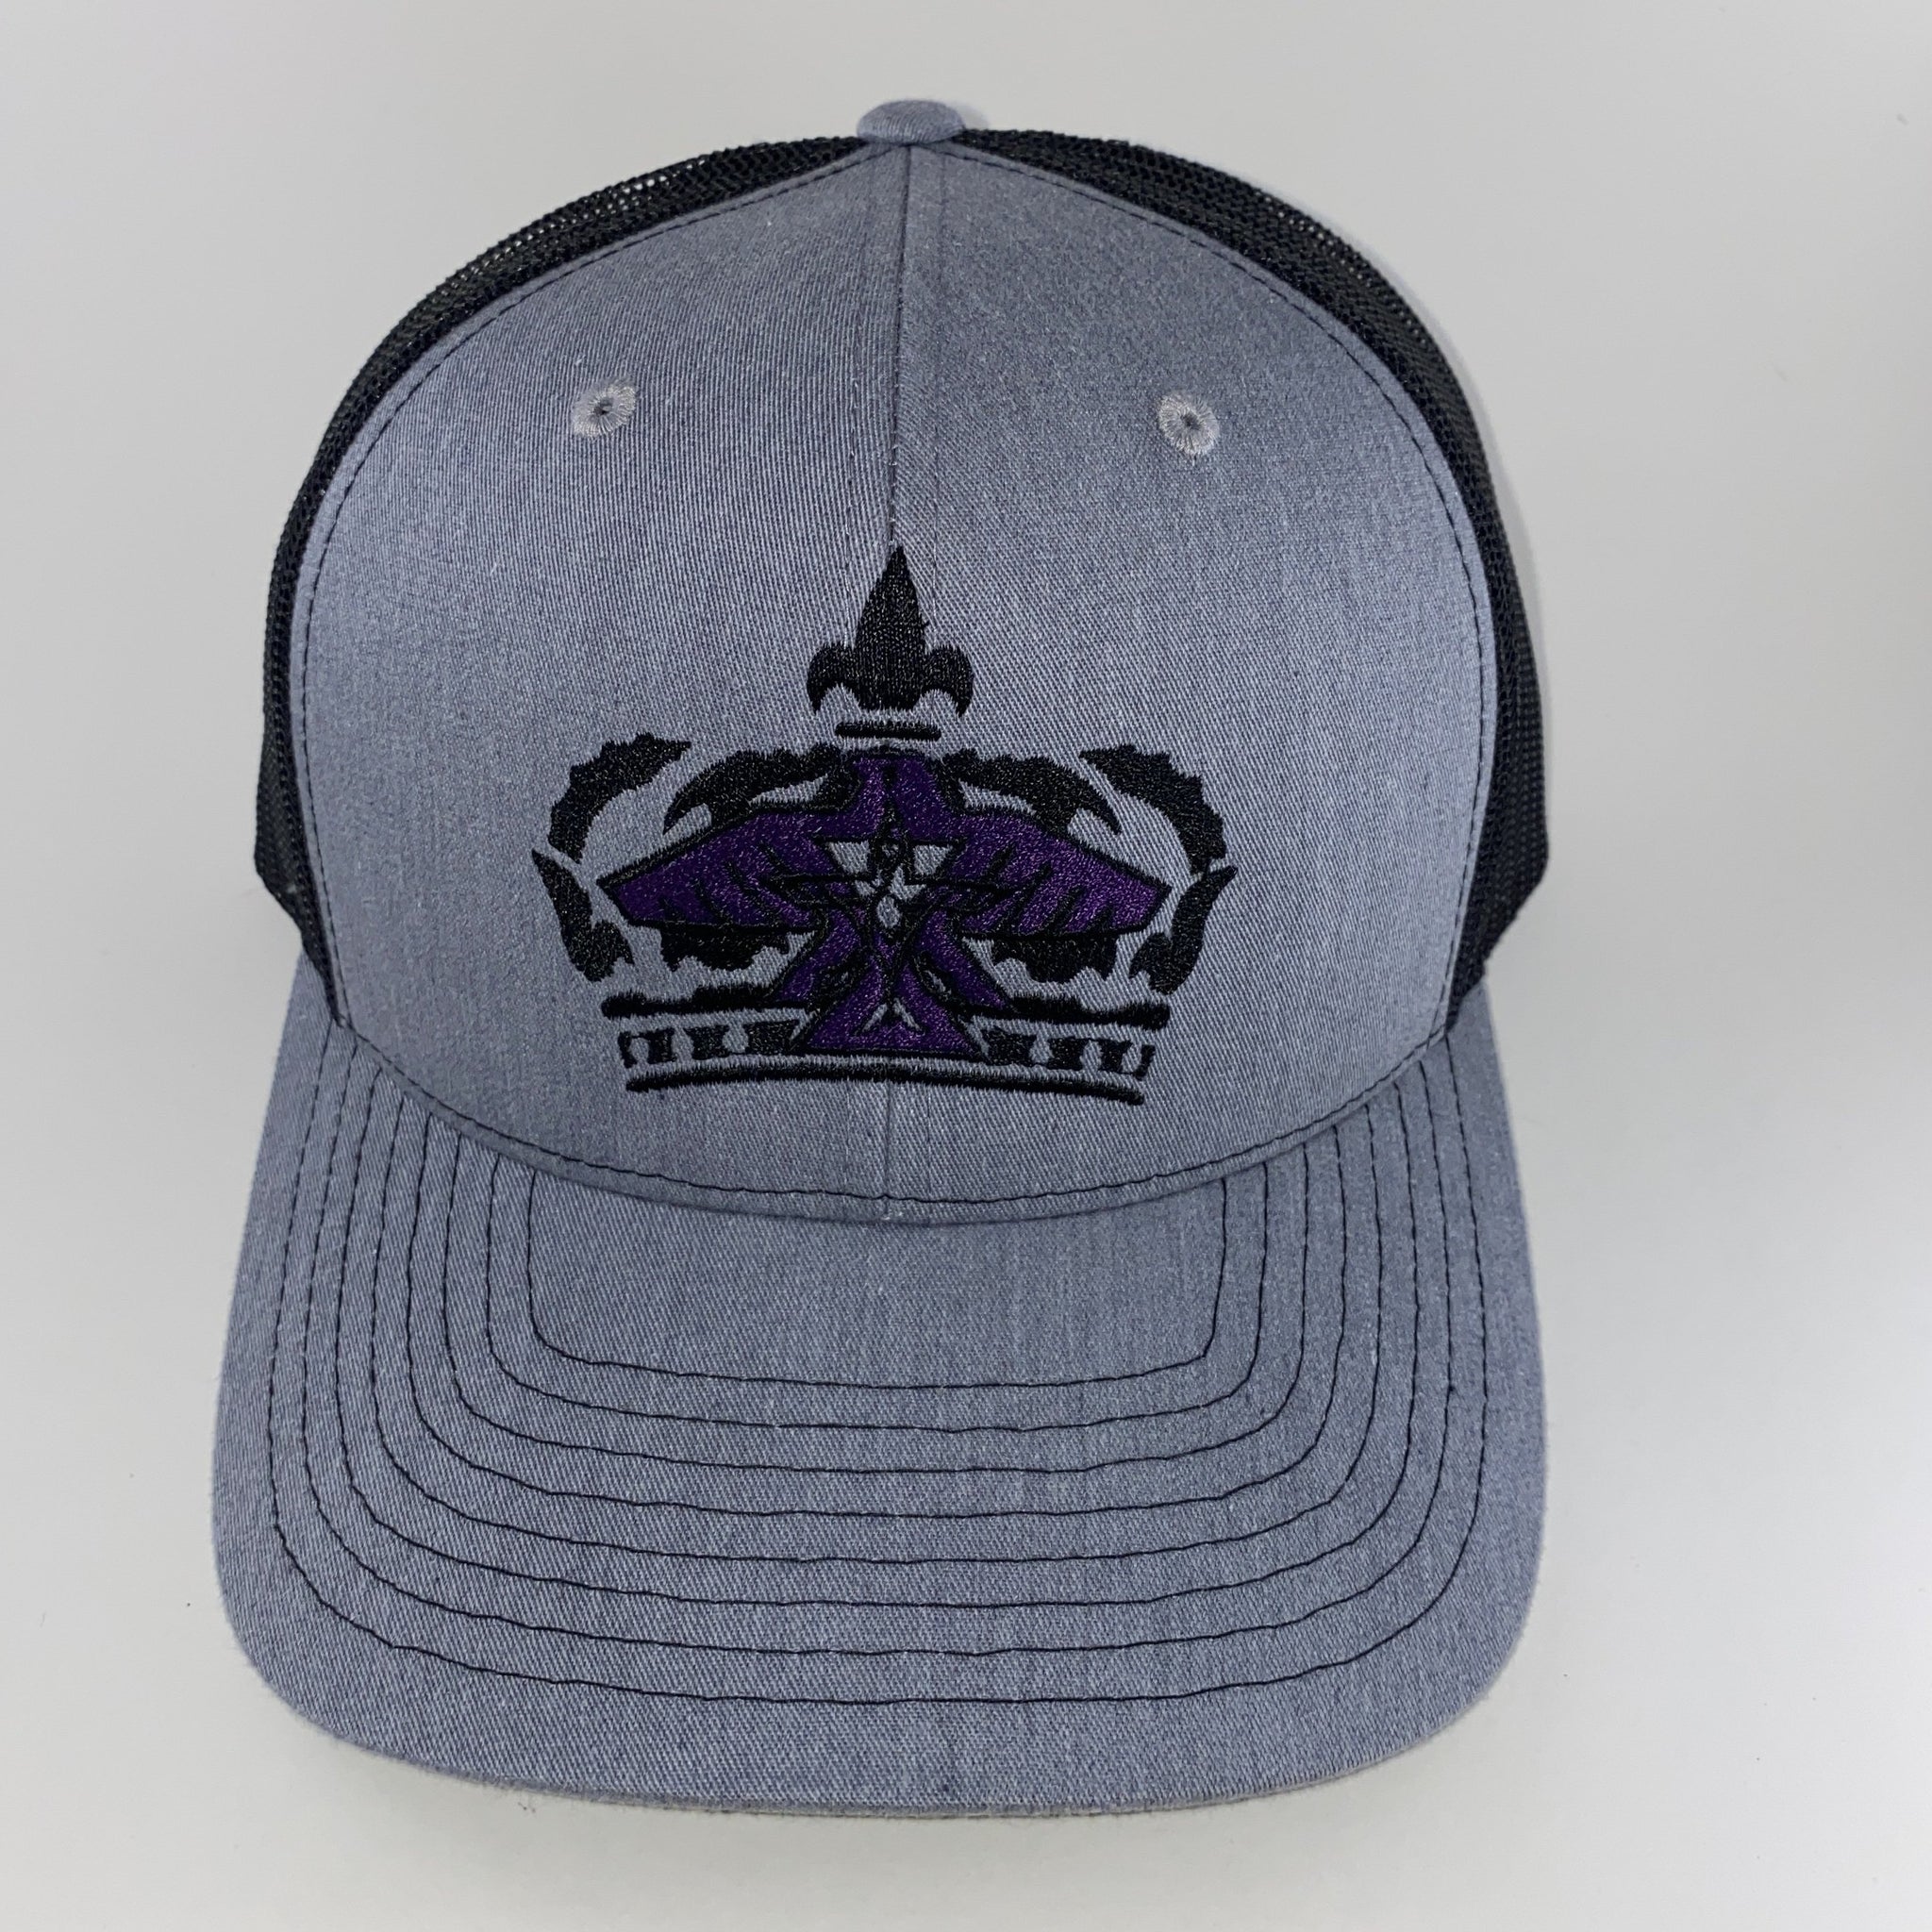 La Kings Trucker Hat 